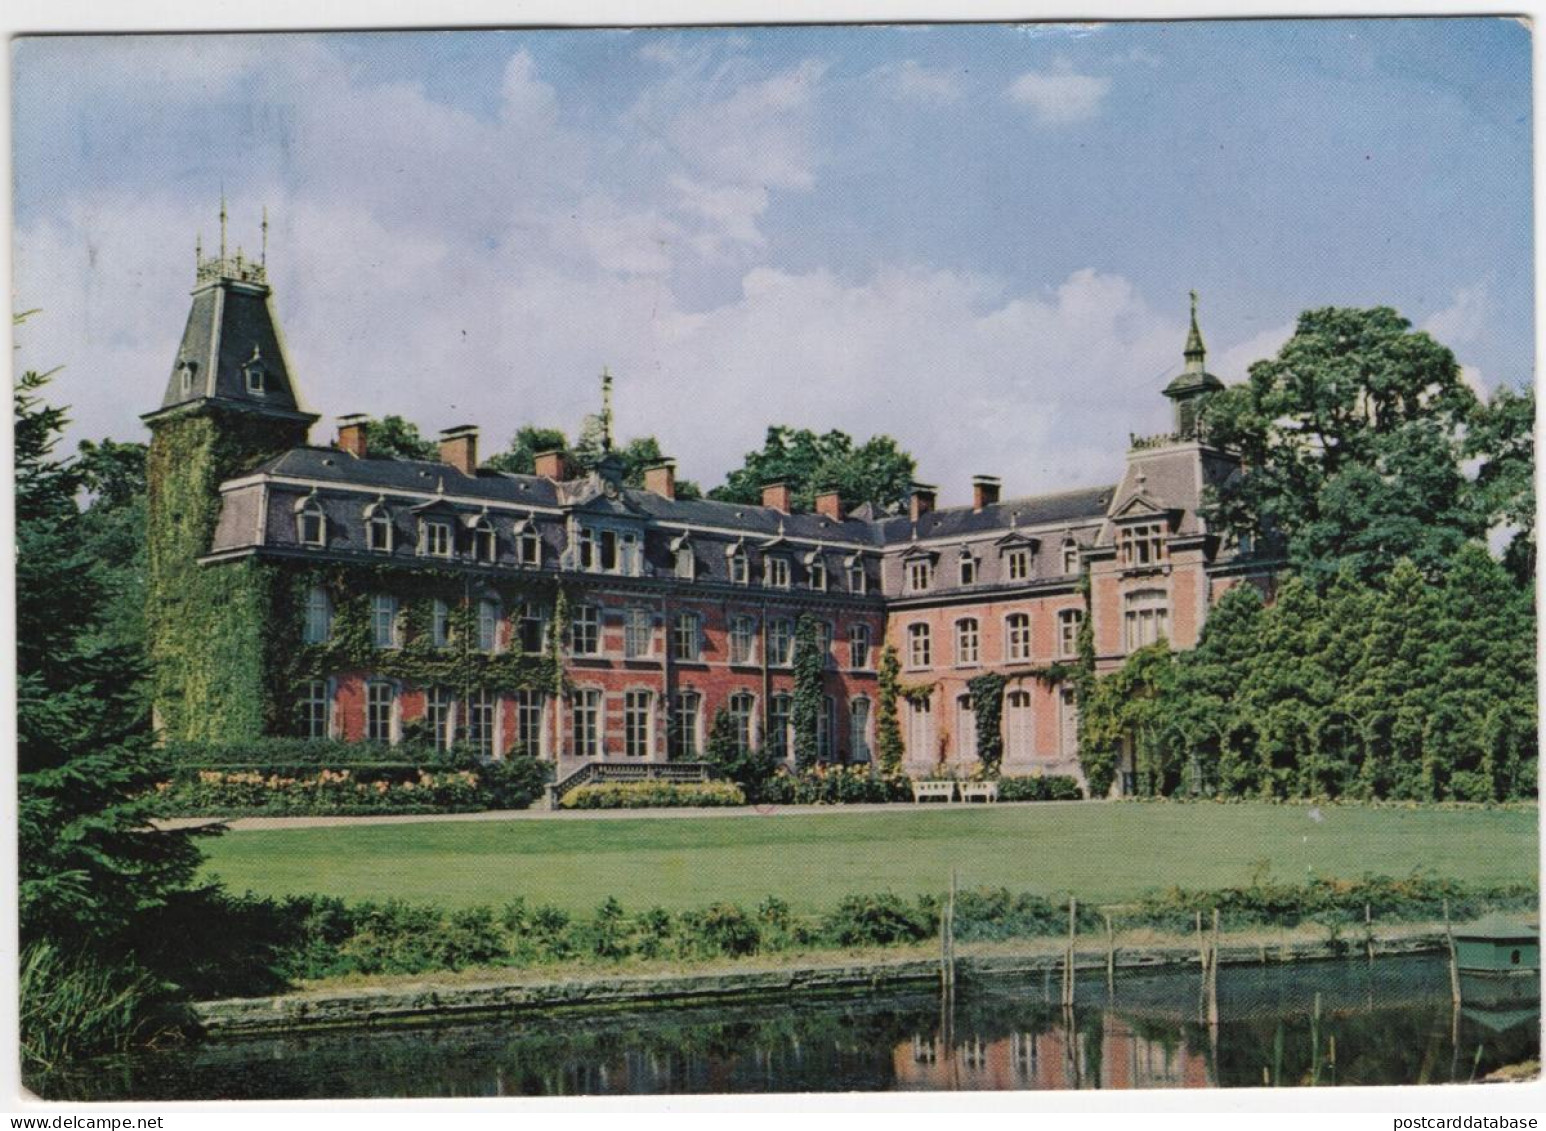 Lombise - Château Appartenant Au Marquis - Lens